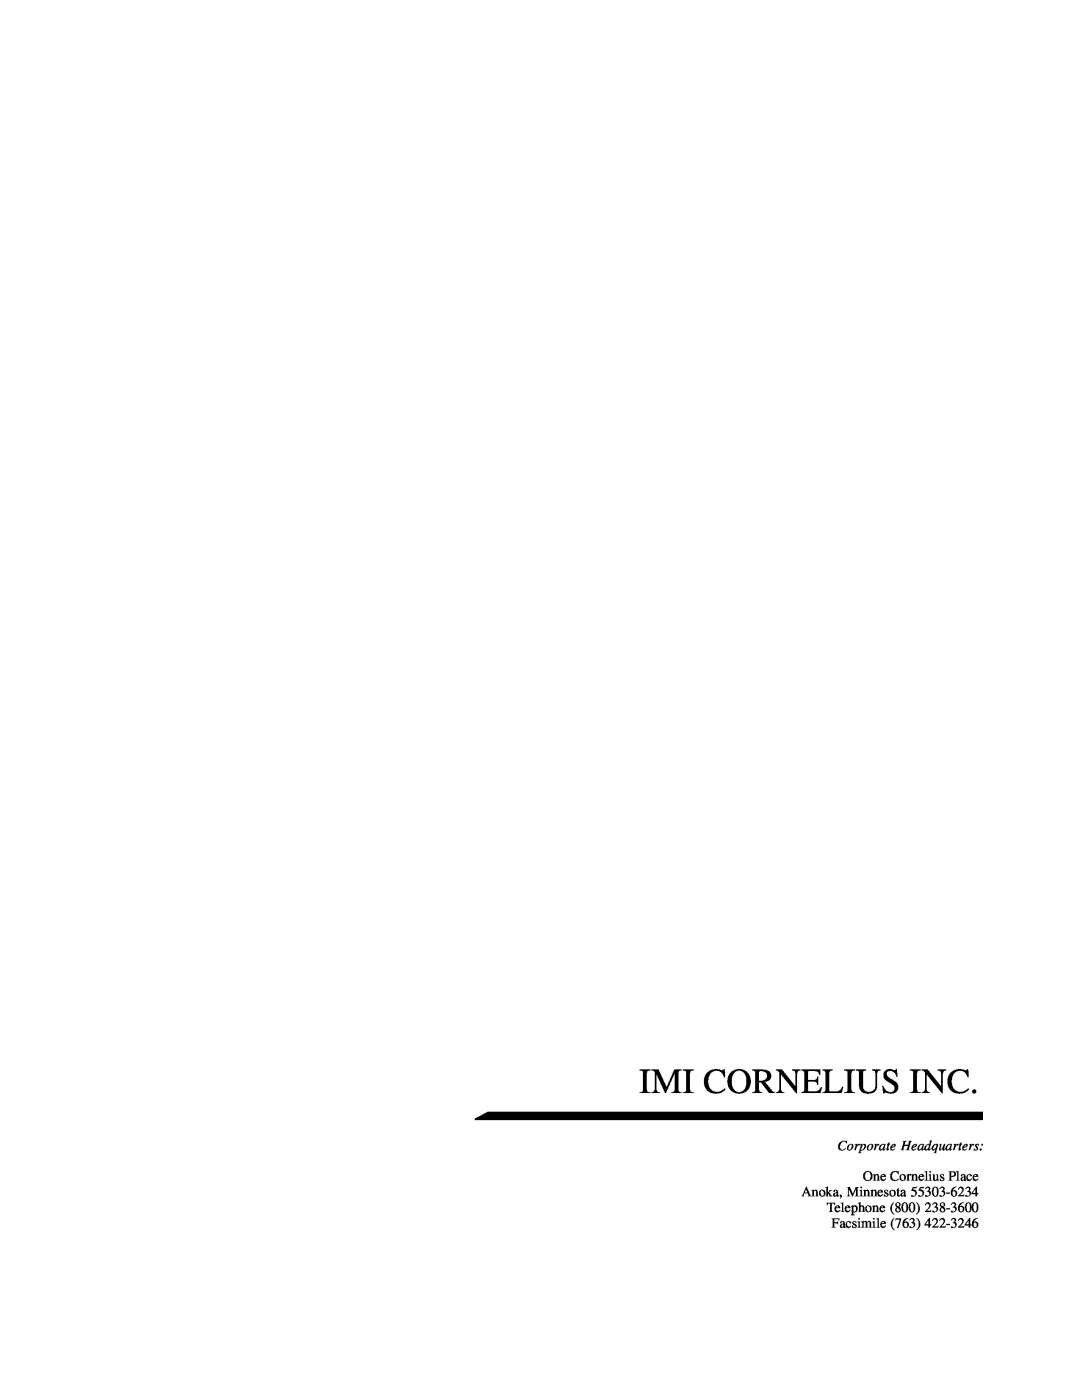 Cornelius UCR 700 Series service manual Imi Cornelius Inc, Corporate Headquarters 